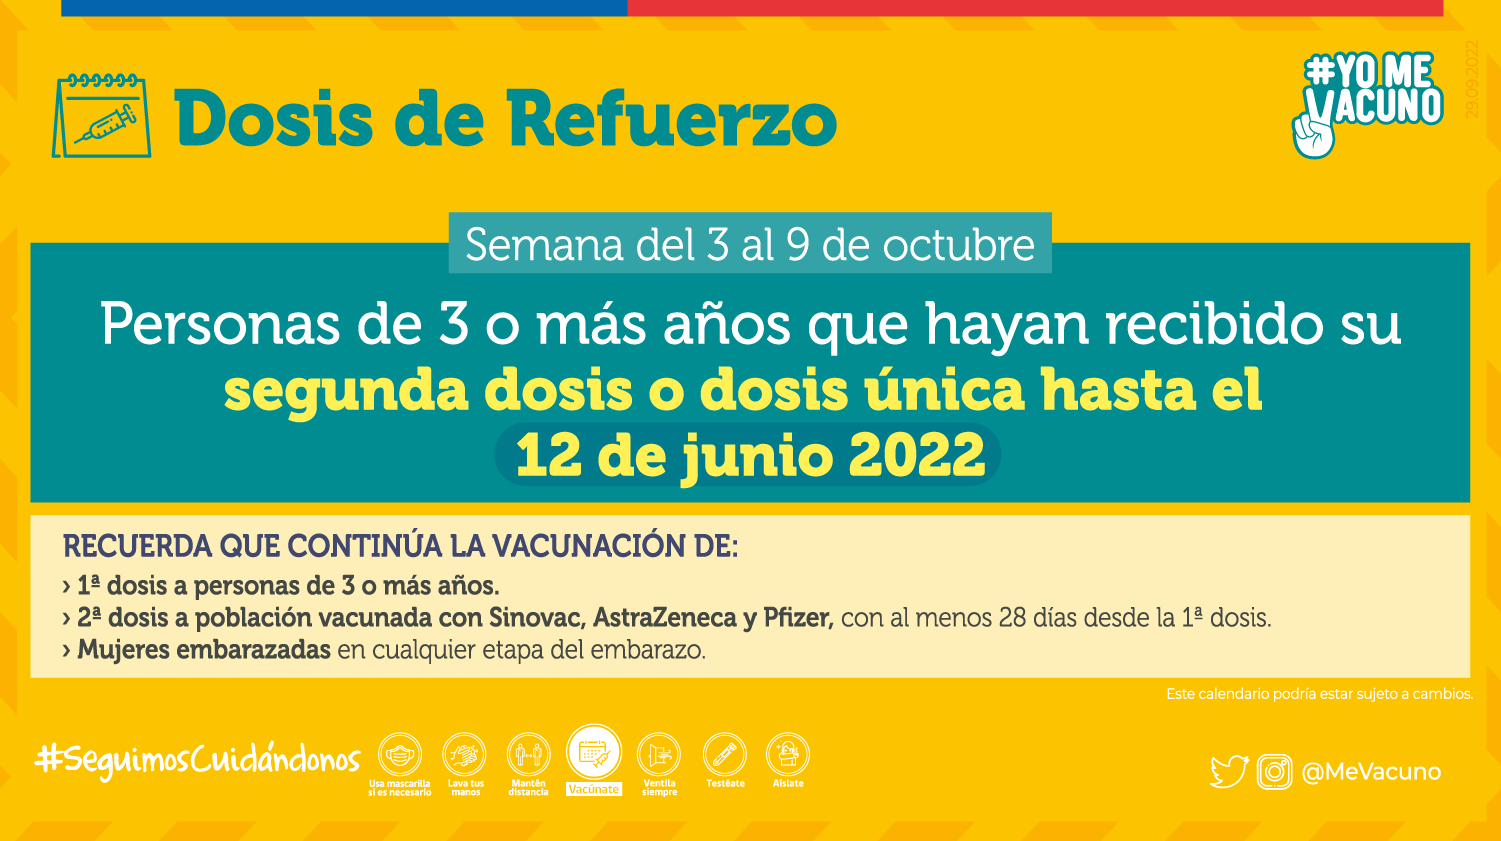 Calendario de vacunación semana del 3 al 9 de octubre de 2022 dosis de refuerzo